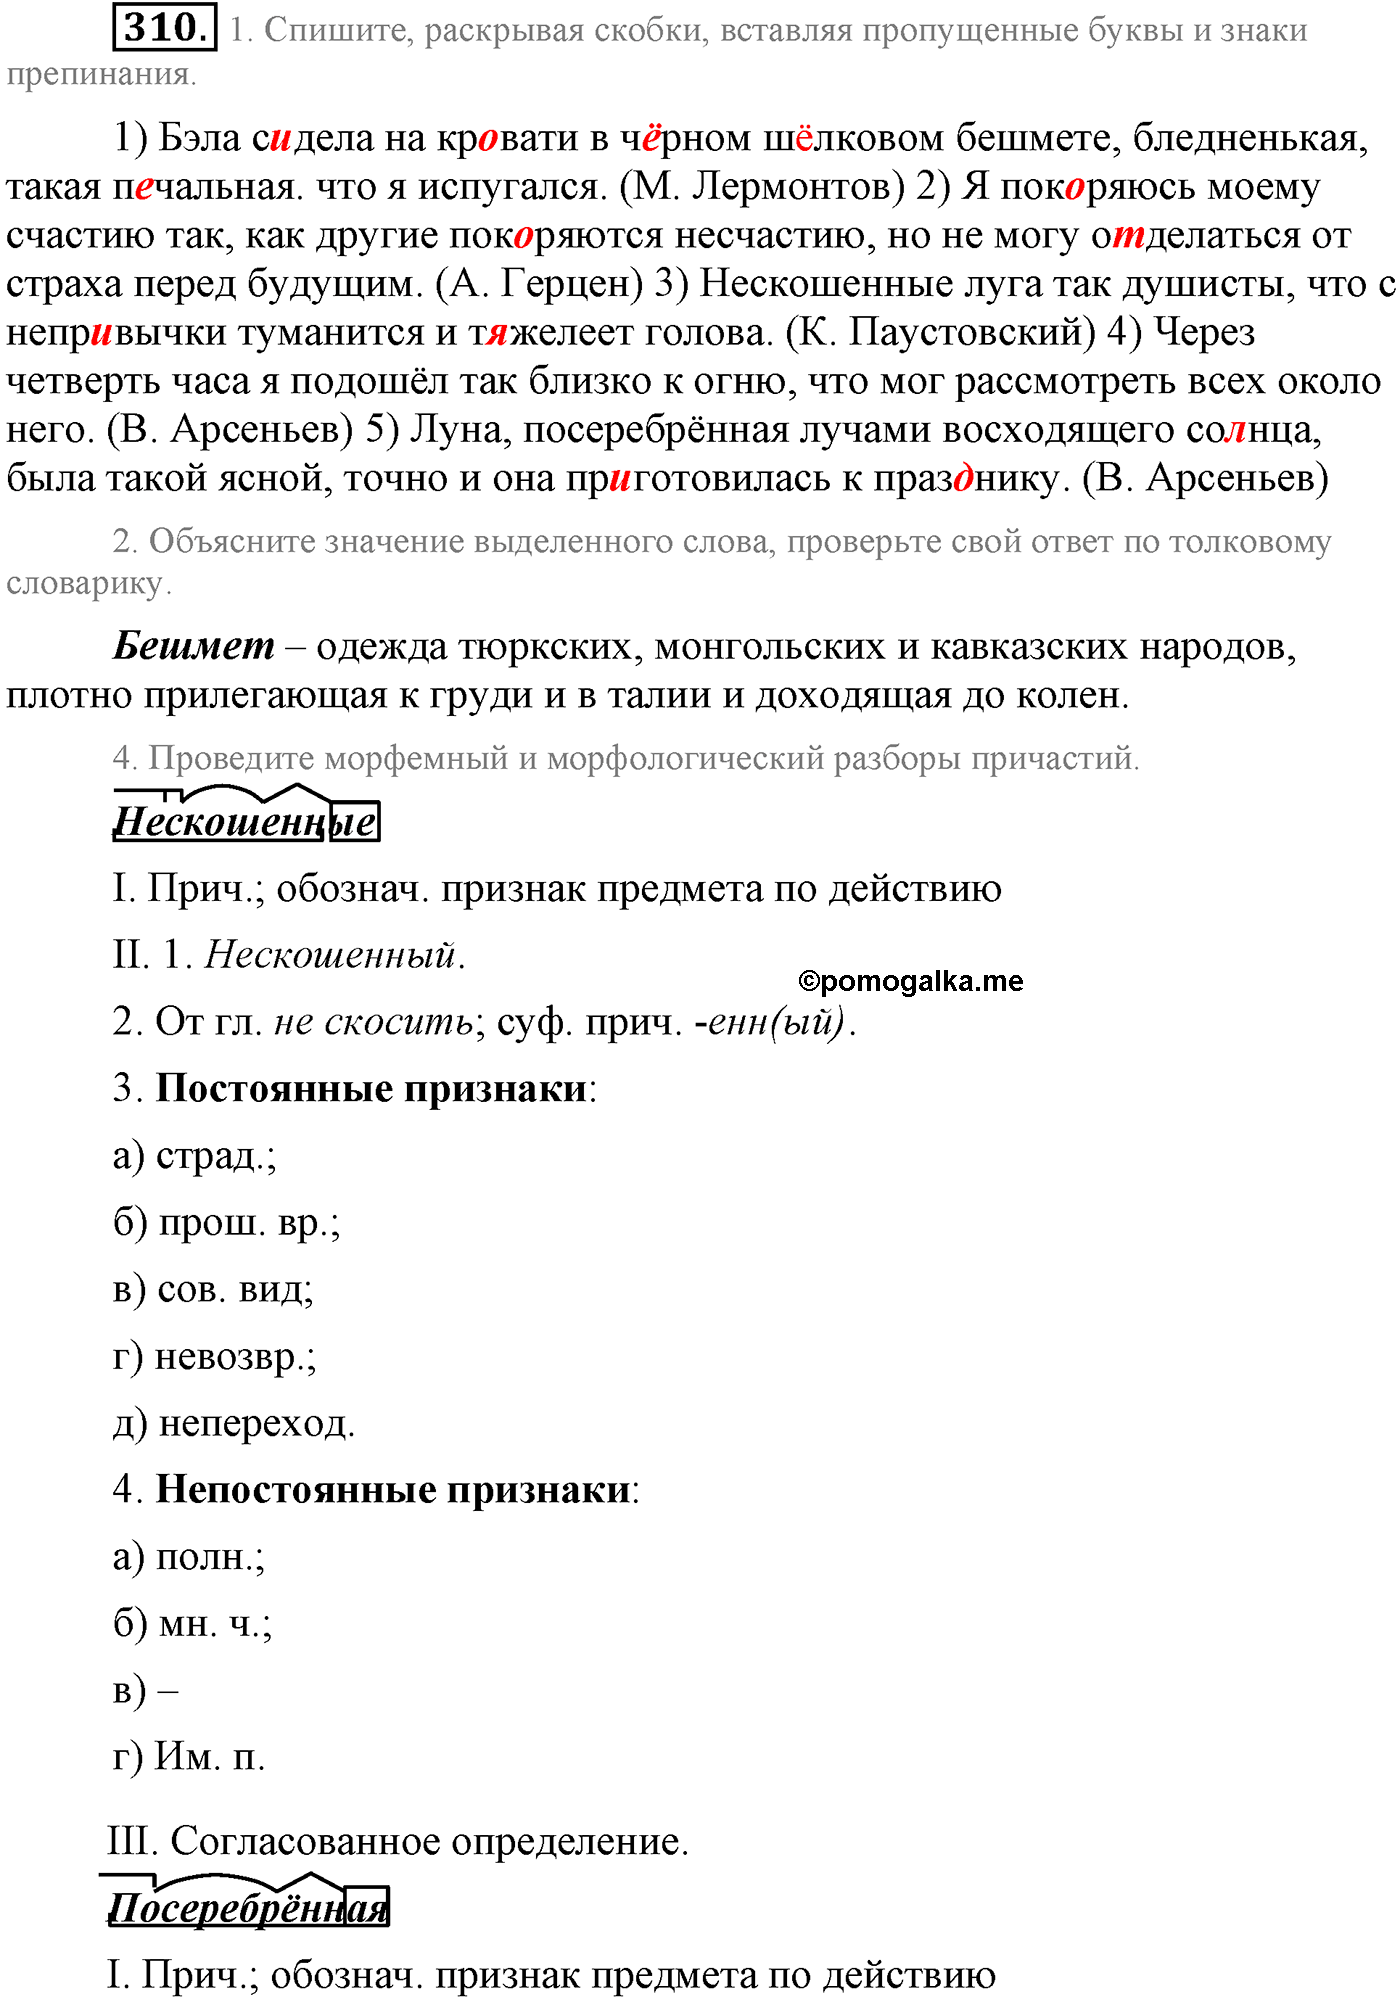 упражнение №310 русский язык 9 класс Львова